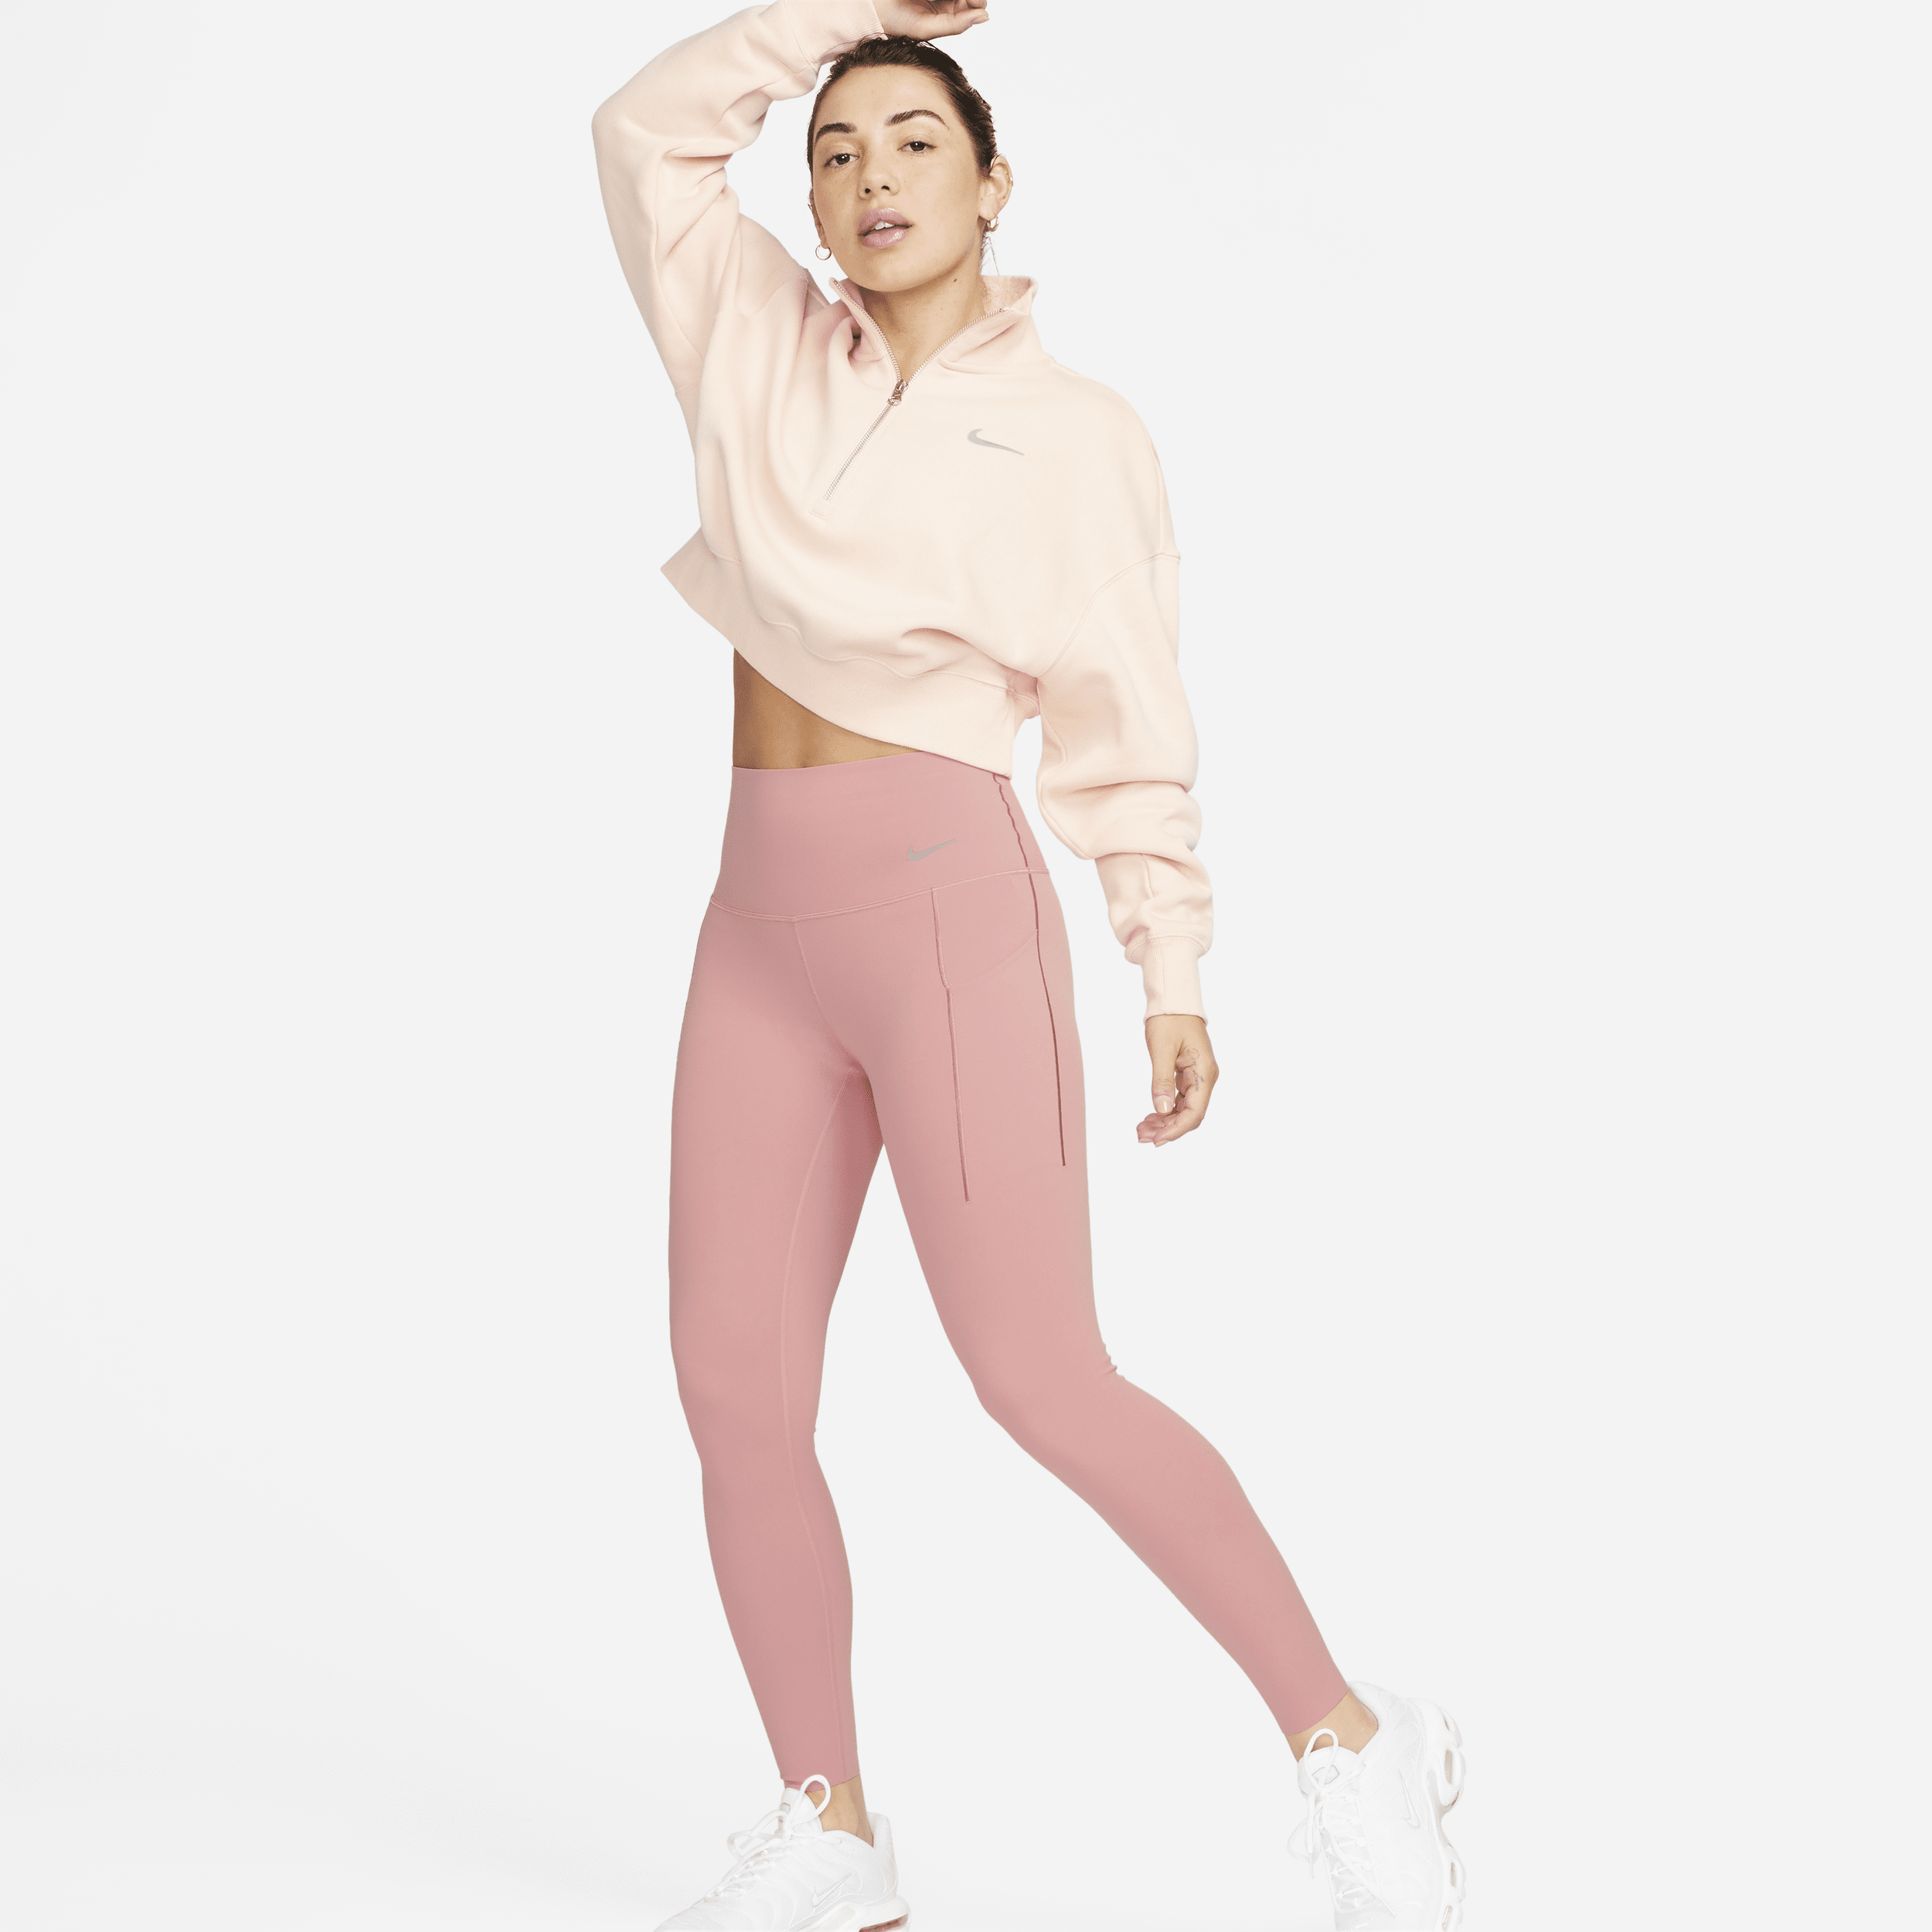 Nike Universa-leggings i 7/8 længde med medium støtte, høj talje og lommer til kvinder - Pink